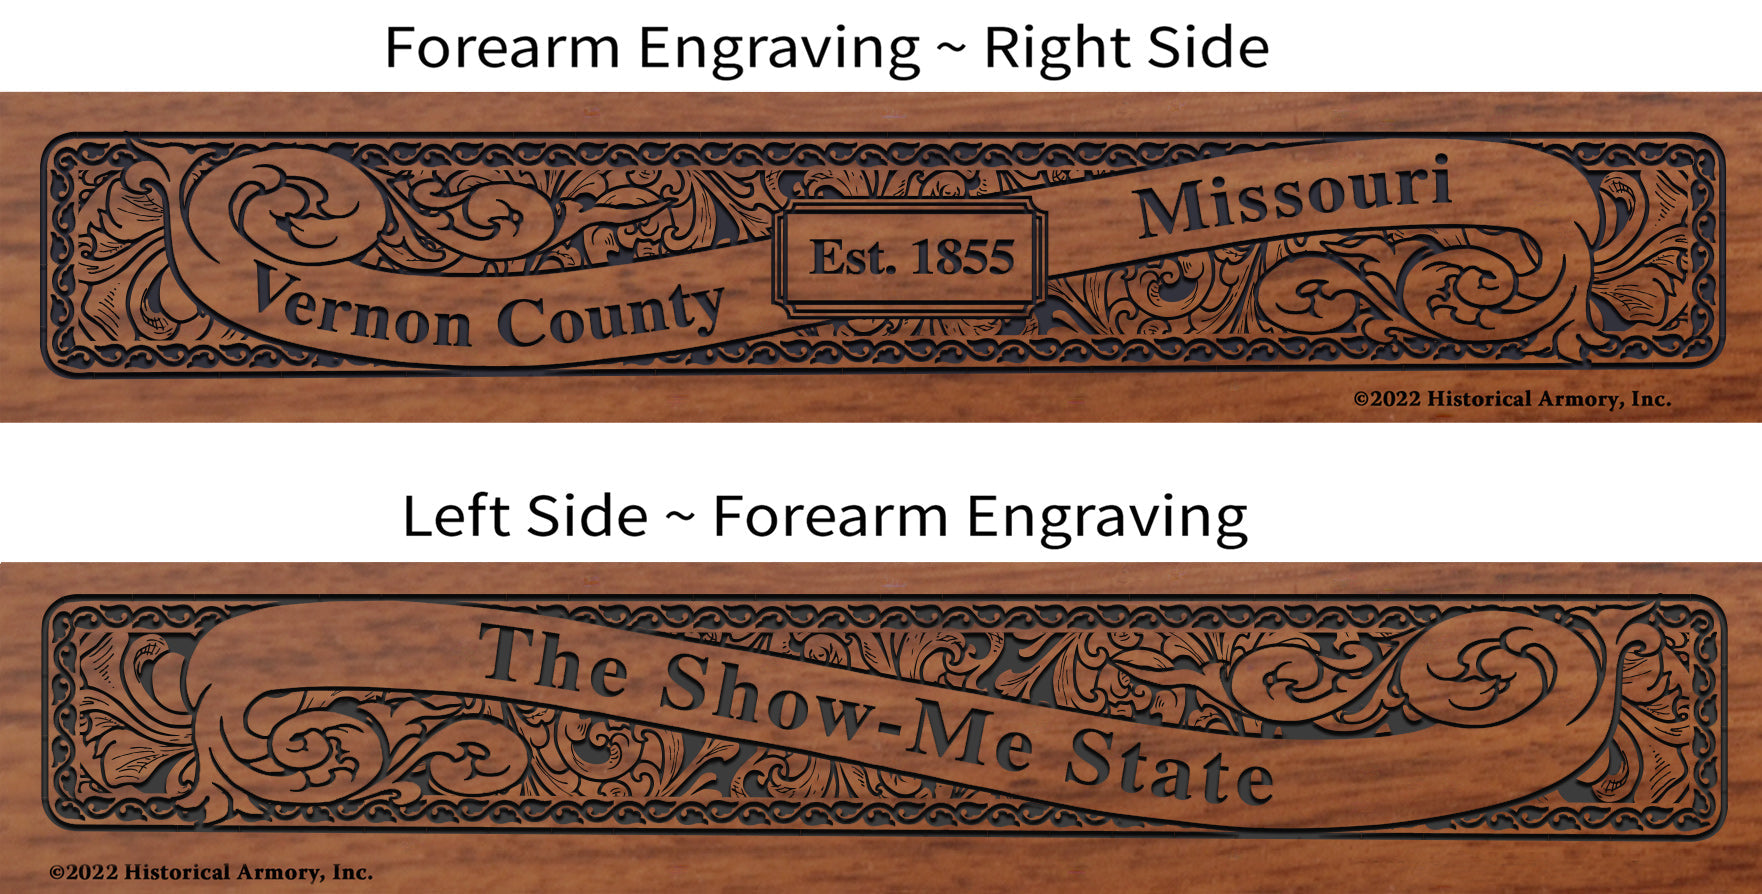 Vernon County Missouri Engraved Rifle Forearm